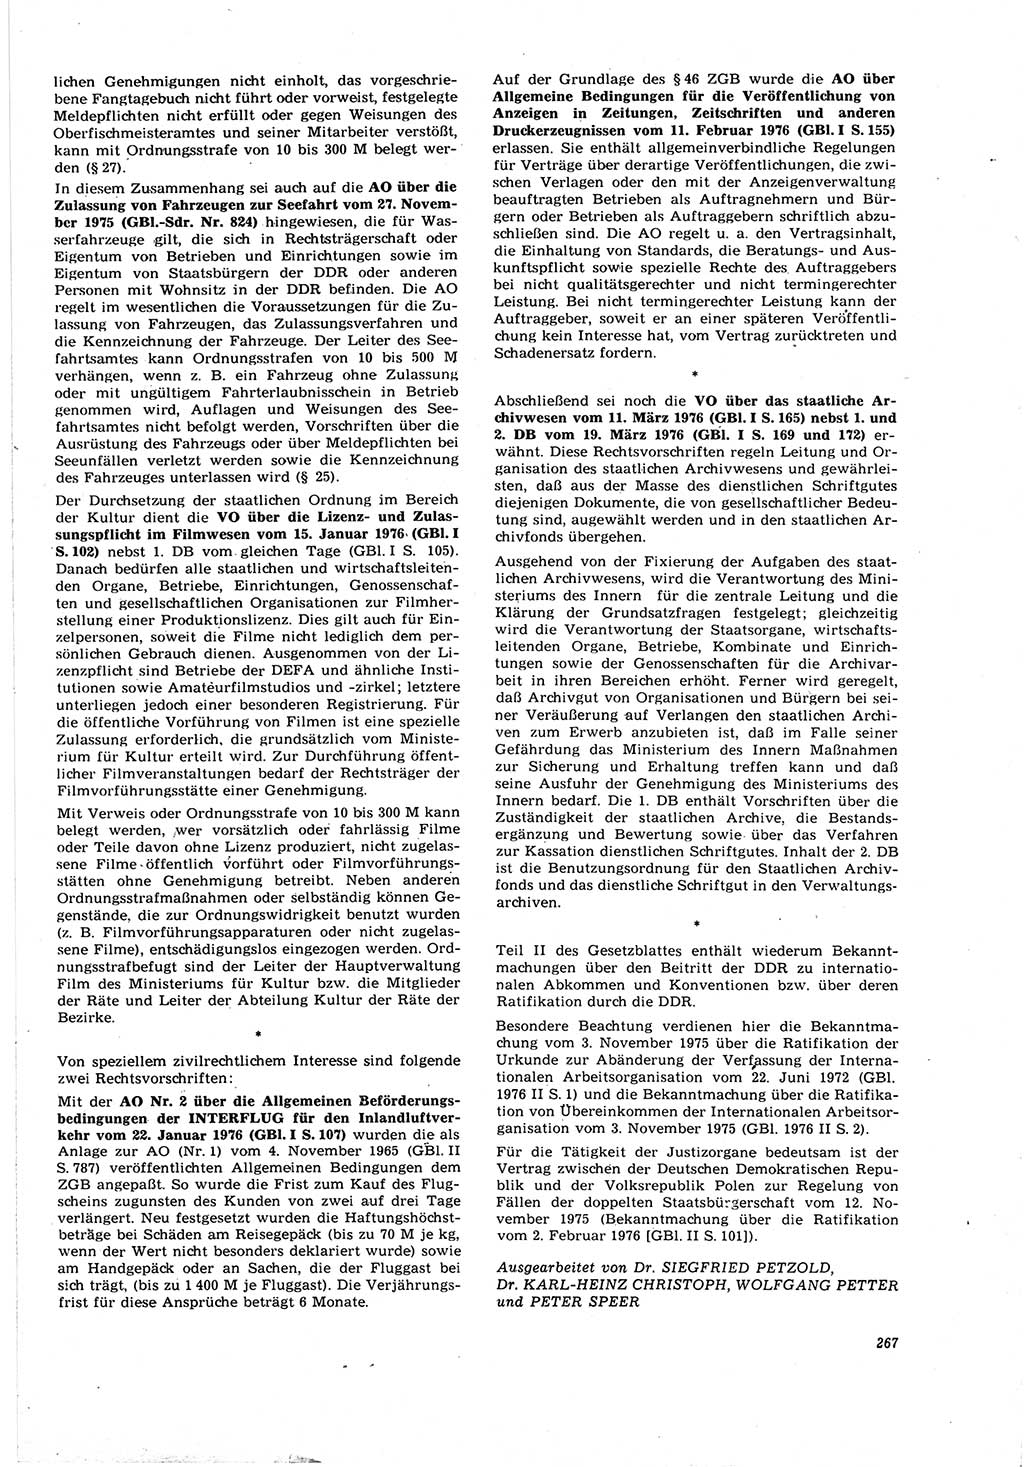 Neue Justiz (NJ), Zeitschrift für Recht und Rechtswissenschaft [Deutsche Demokratische Republik (DDR)], 30. Jahrgang 1976, Seite 267 (NJ DDR 1976, S. 267)